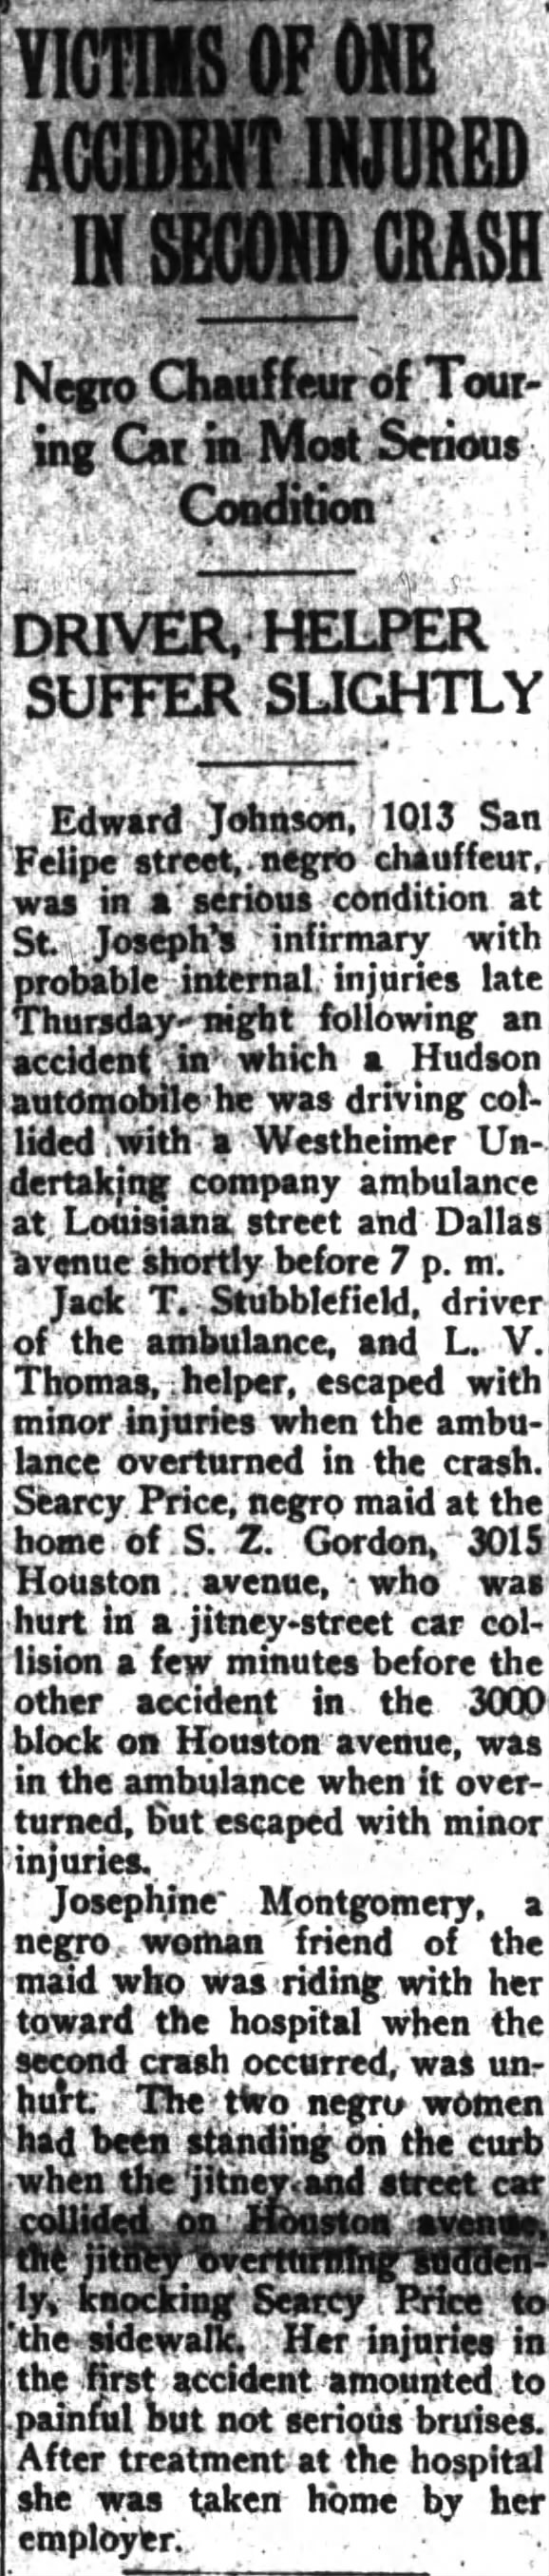 L. V. Thomas, ambulance helper
The Houston Post, 11-1-1924, p.1